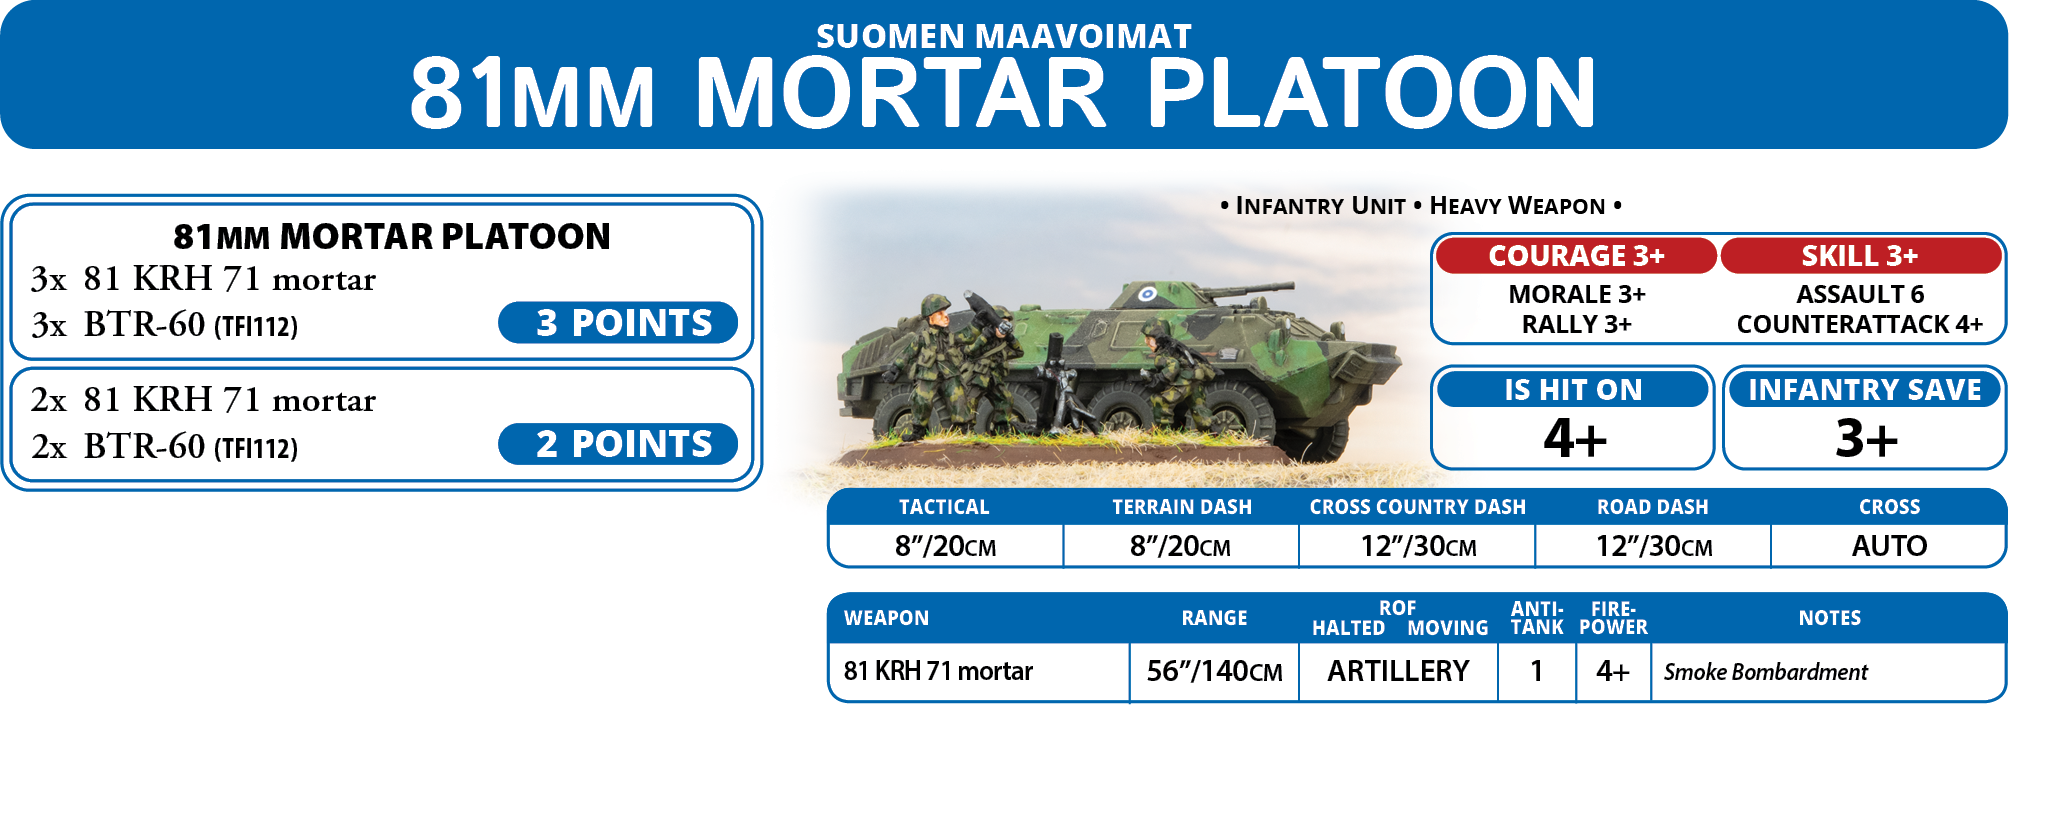 81mm Mortar Platoon